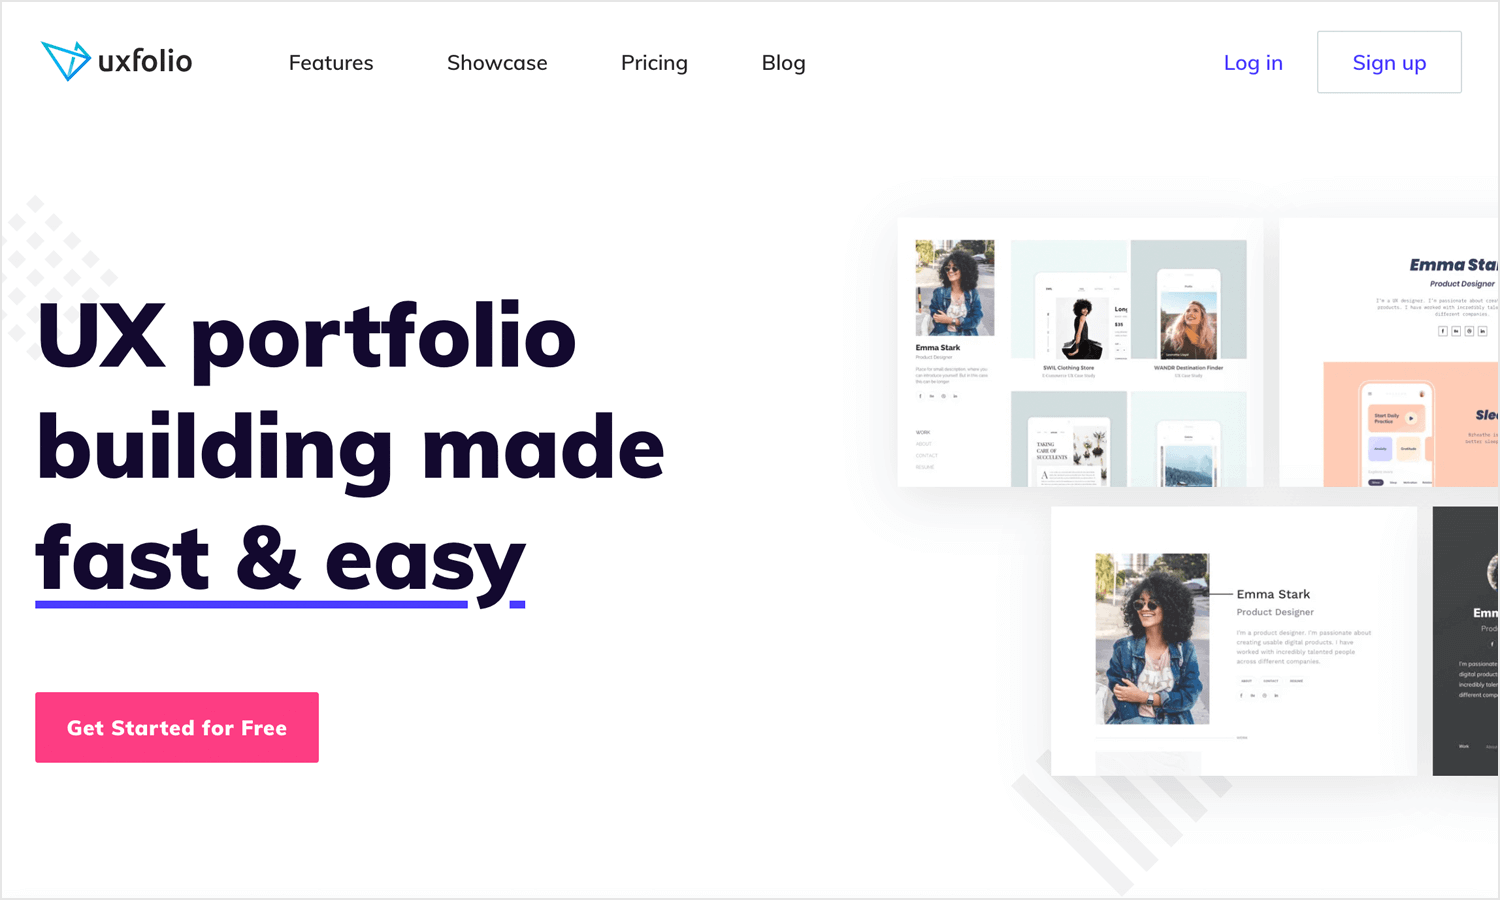 uxfolio as great website for ux portfolios